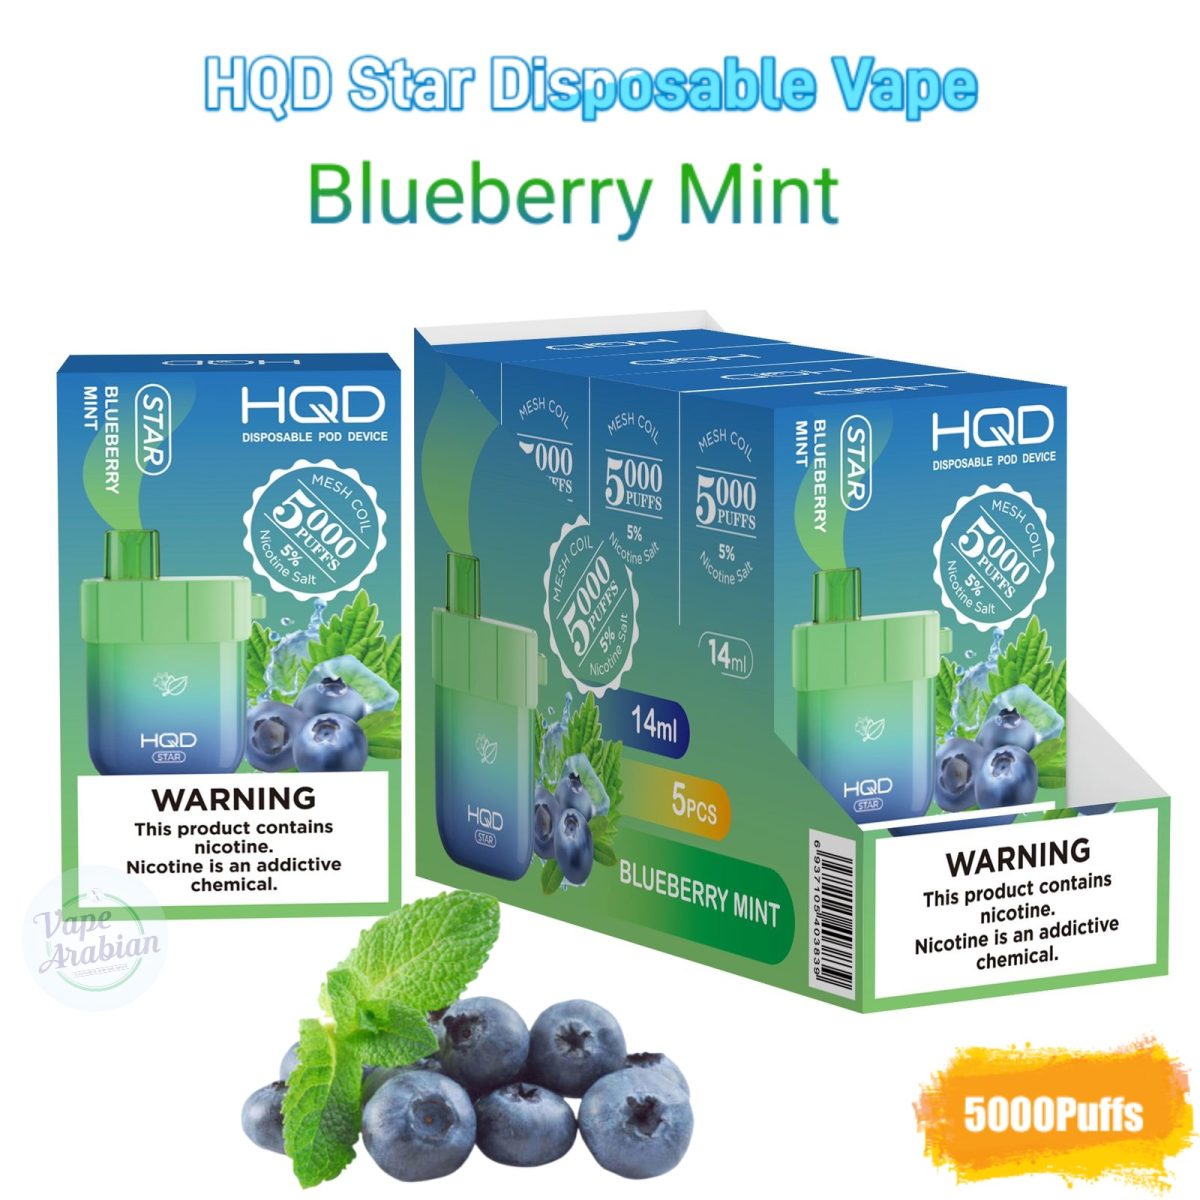 HQD Star Disposable Vape 5000 Puffs- Blueberry Mint